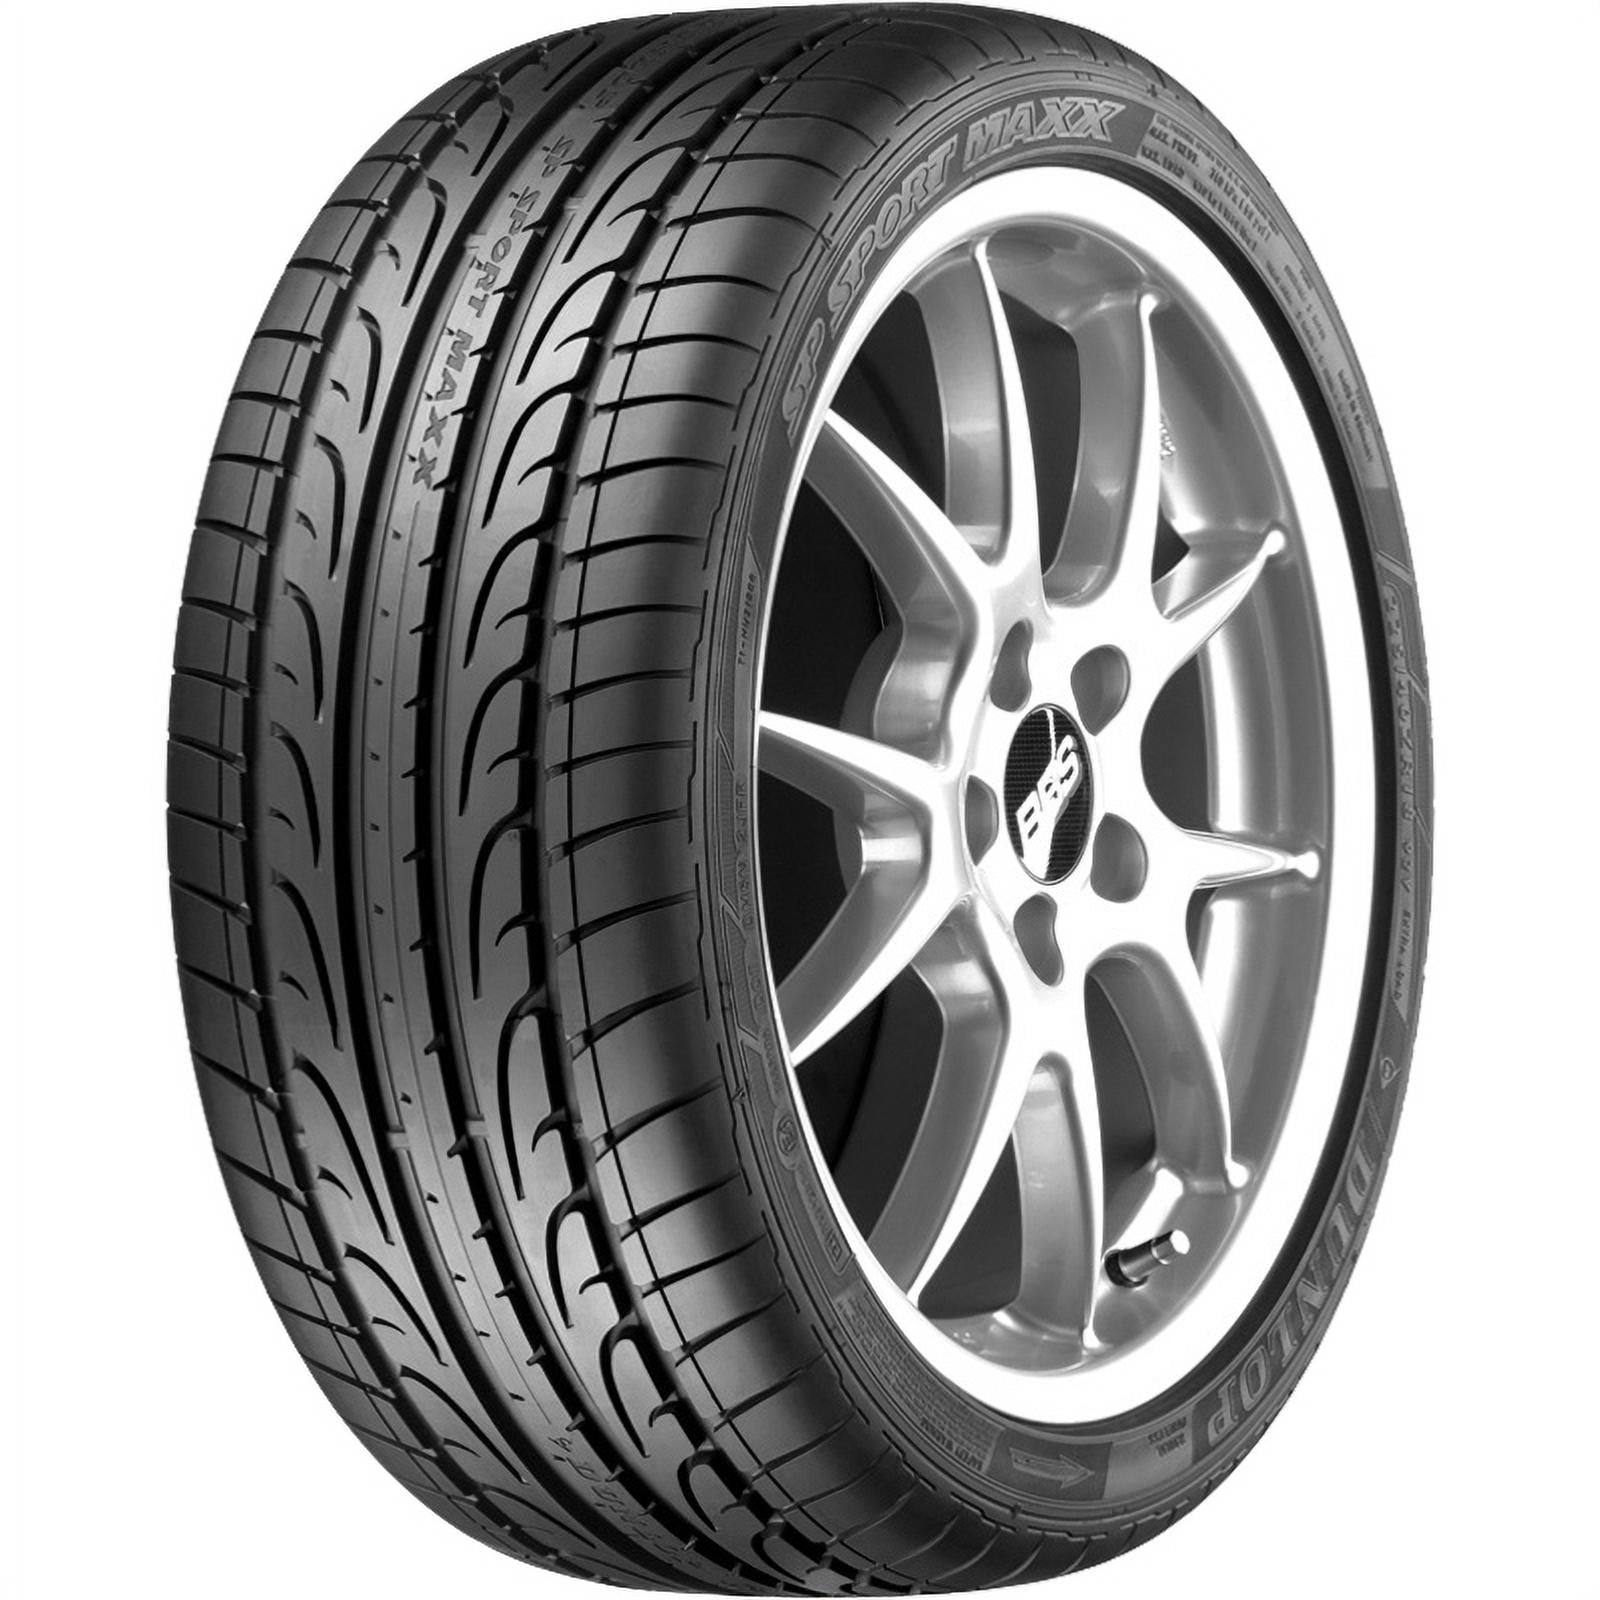 Flat Fits: 94W NRT Malibu Tire Maxx Malibu 2013-15 Sport Run 2016-23 SP Chevrolet 050 Chevrolet DSST 245/40R19 LT, (OE) Dunlop LTZ